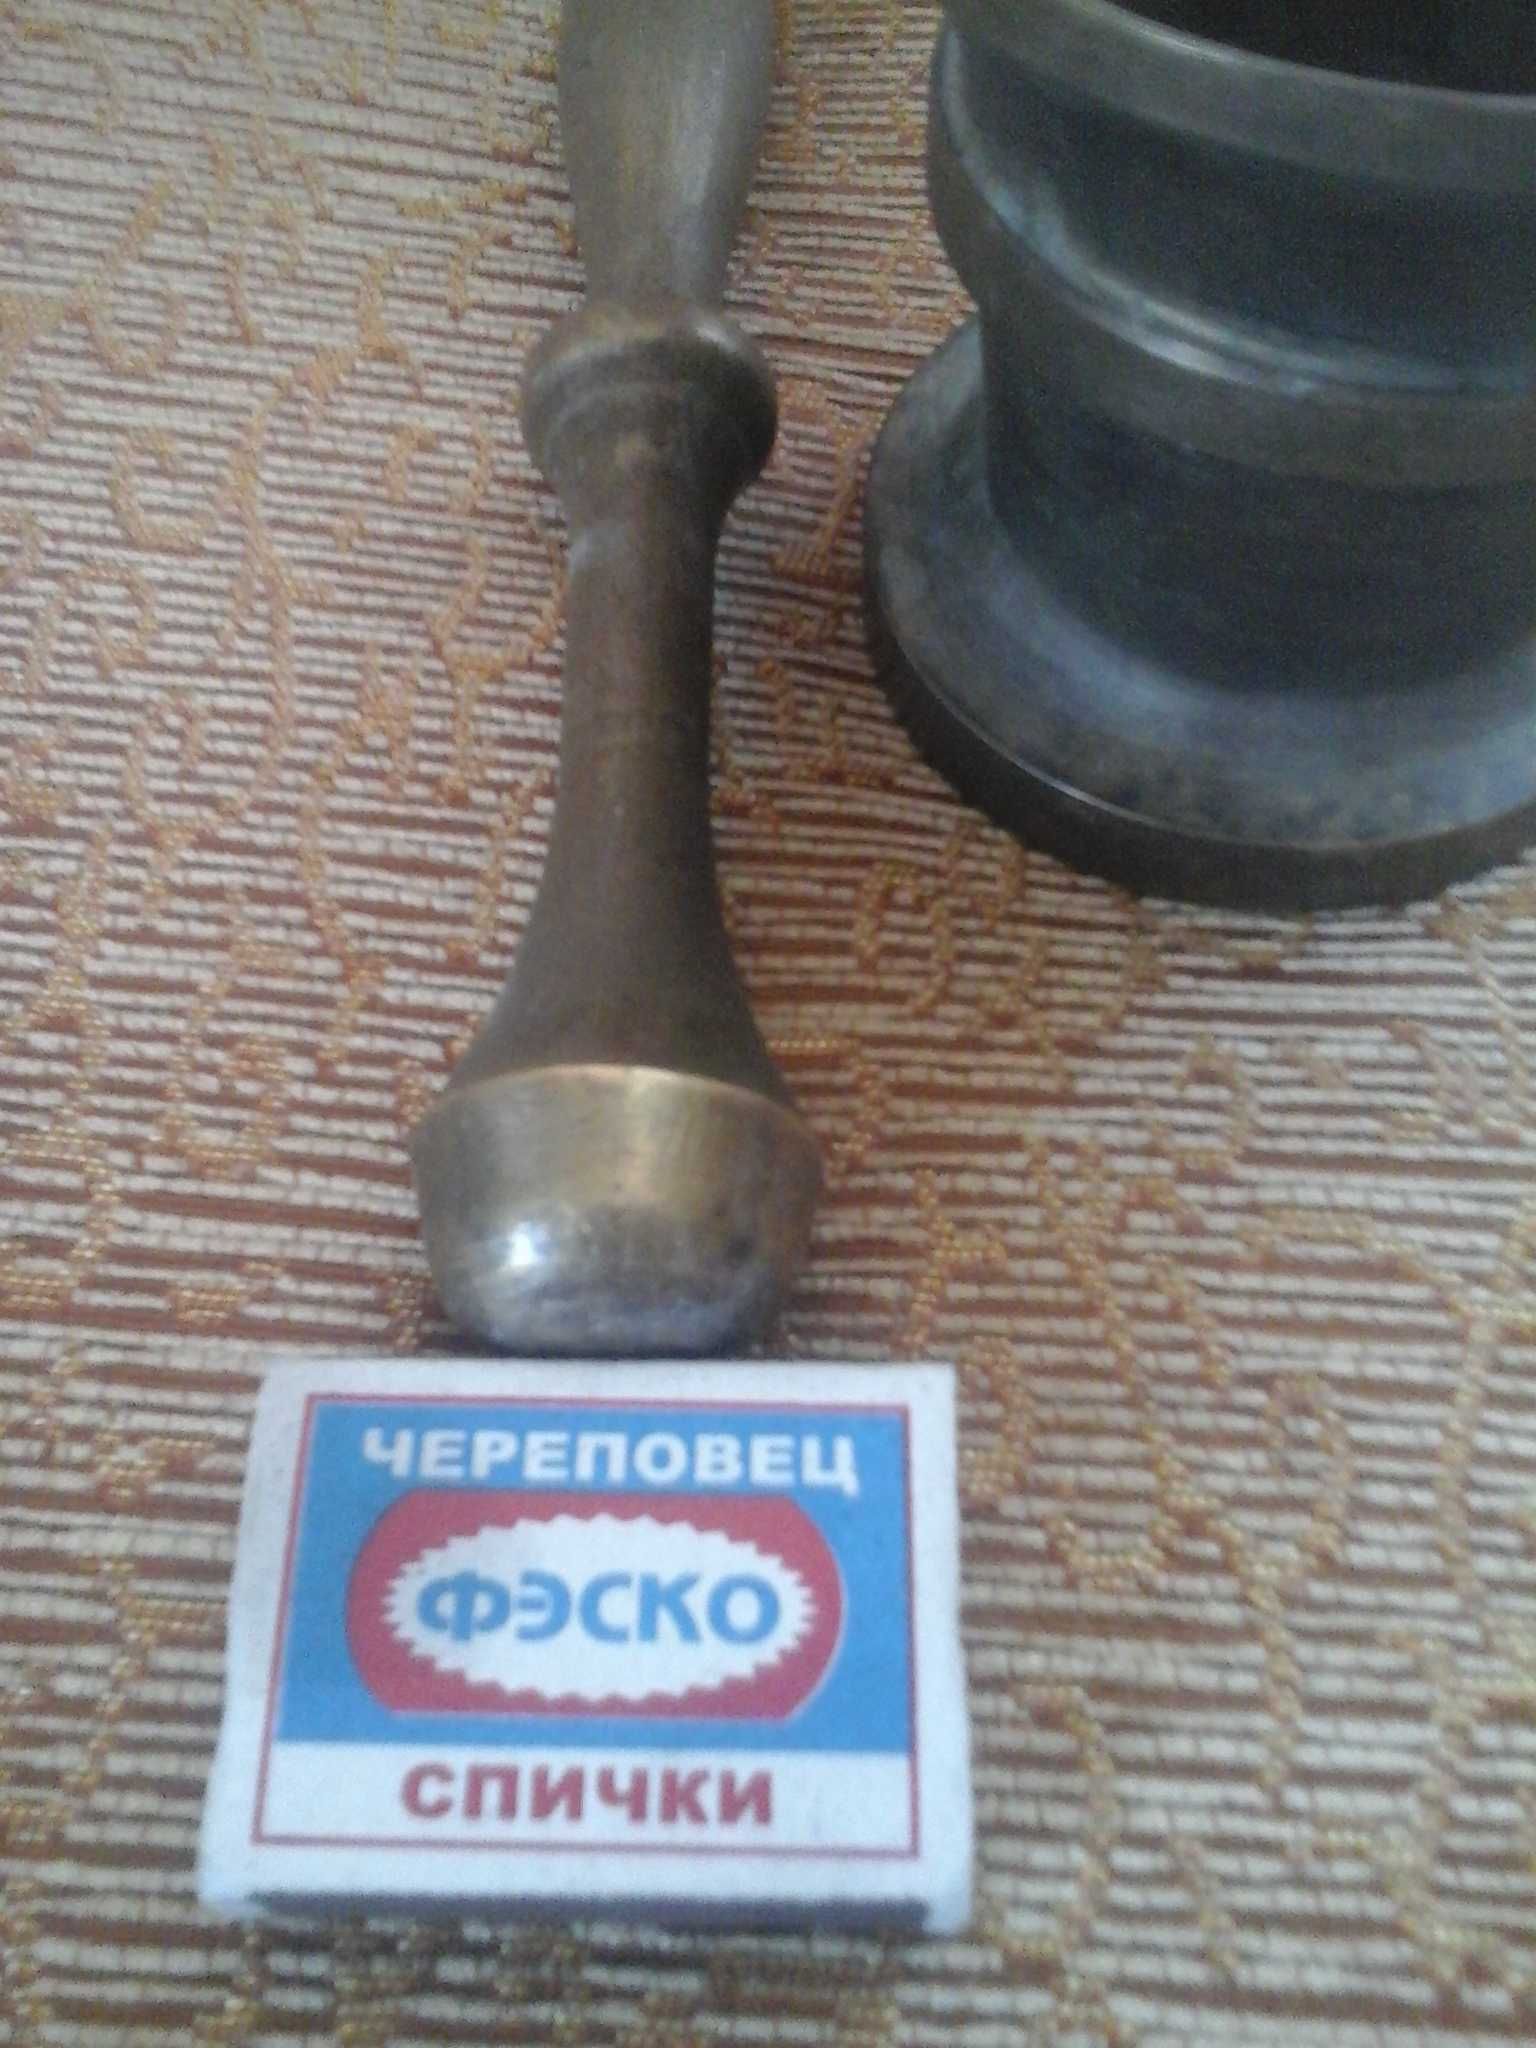 продам ступу из бронзы производства СССР